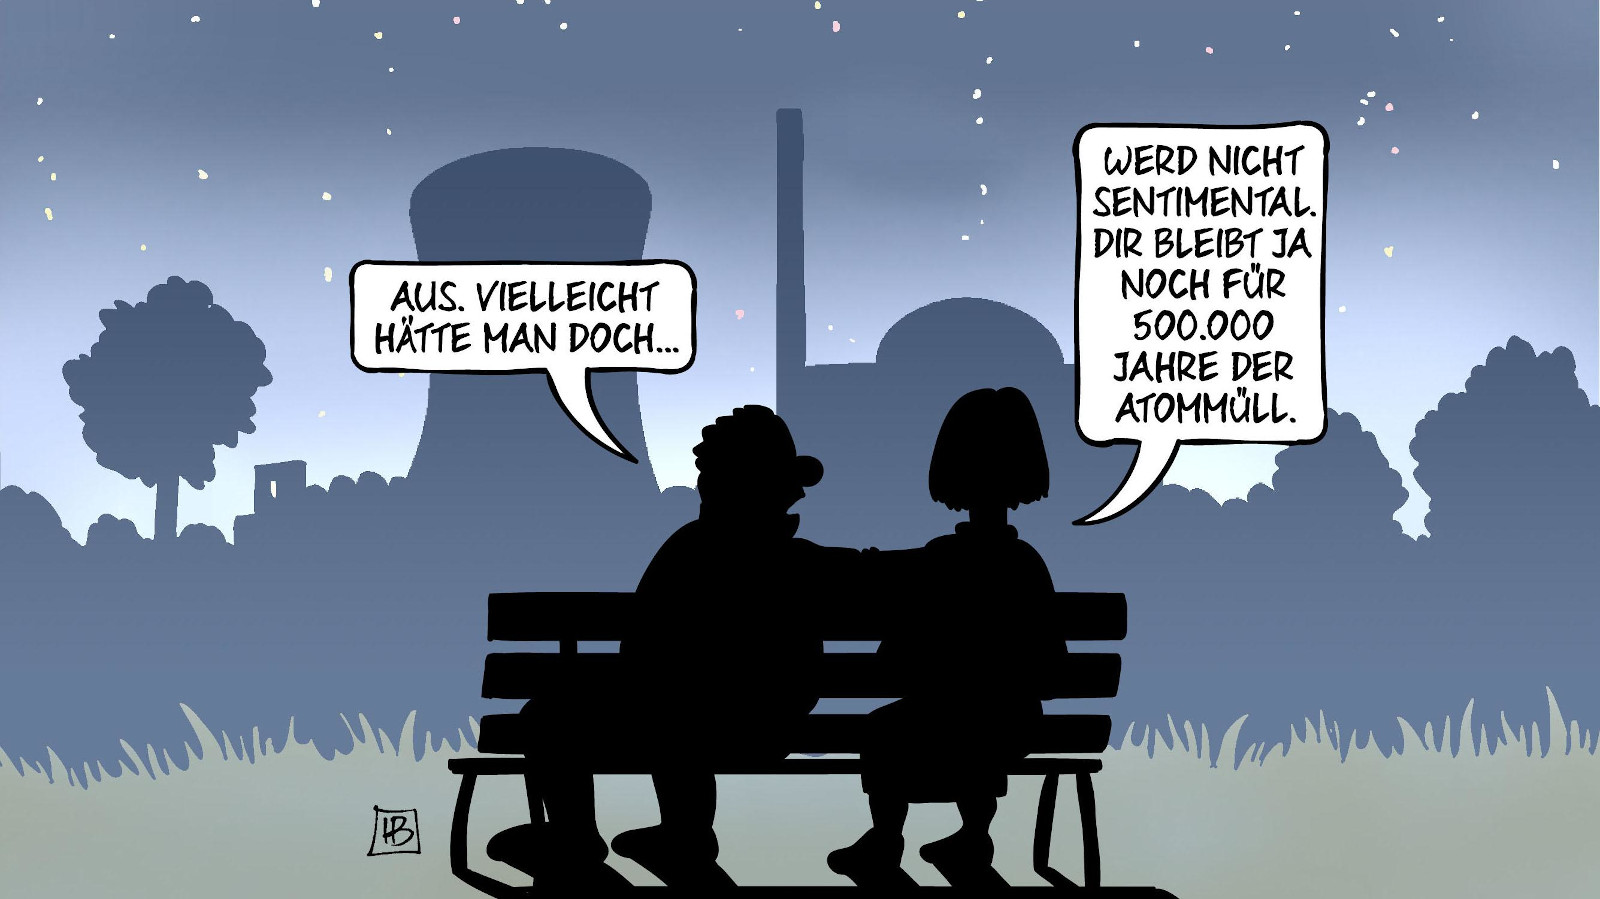 Am 15. April 2023 wurde ndie letzten drei Atomkraftwerke (AKW) in Deutschland abgeschaltet. Die Abschaltung ist Thema dieser Karikatur von Harm Bengen. Sie zeigt einen Dialog von zwei Personen, die in einer sternenklaren Nacht auf einer Bank sitzen. Im Hintergrund sieht man die Umrisse eines AKW. Die linke Person sagt: "Aus. Vielleicht hätte man doch..." Darauf antwortet die Person rechts: "Werd nicht sentimental. Dir bleiben ja noch 500.000 Jahre der Atommüll."